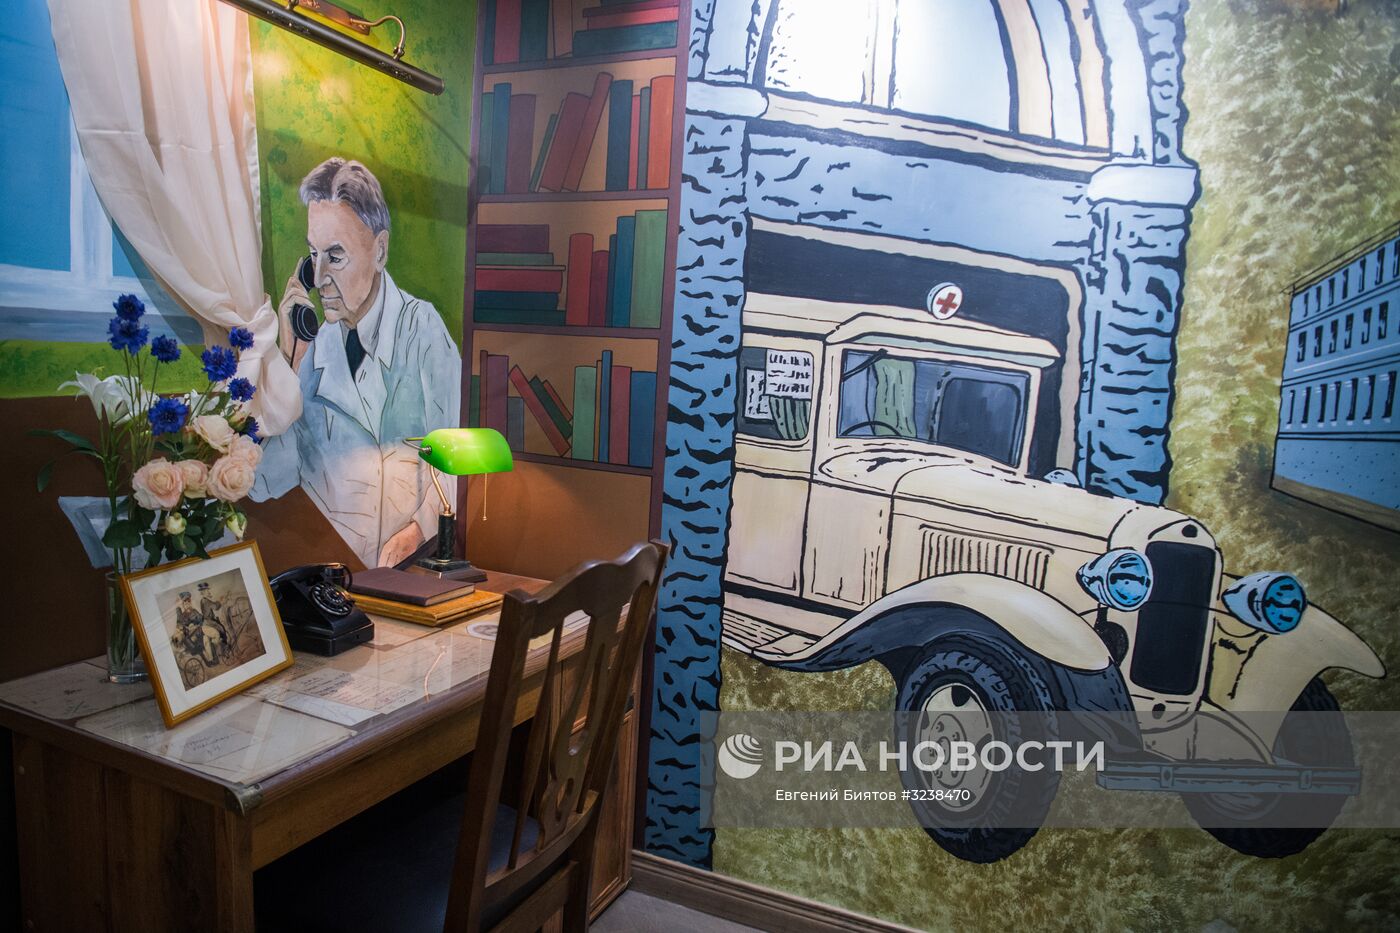 Работа станции скорой помощи им. А. С. Пучкова в Москве